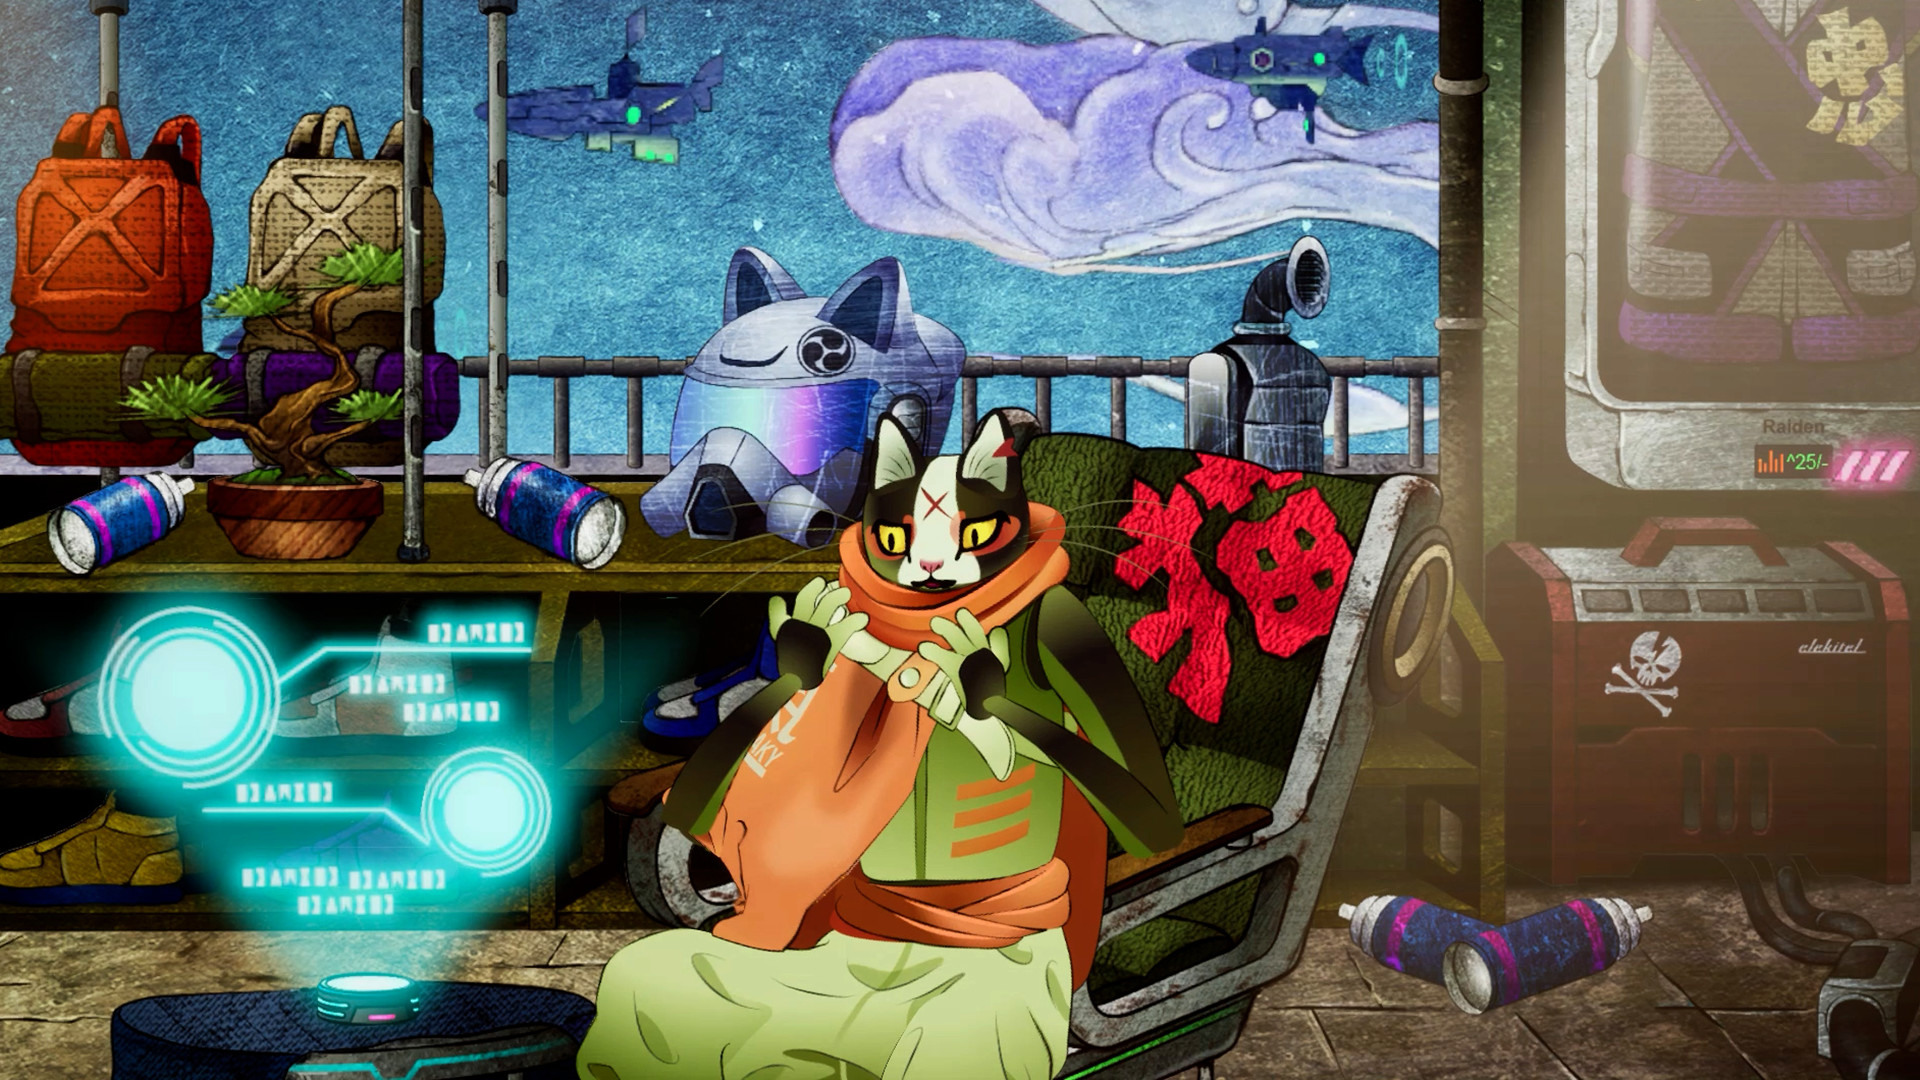 和风冒险游戏《浮世 Ukiyo》中文试玩影片公开 扮演武士猫解开谜团重返现实世界插图2